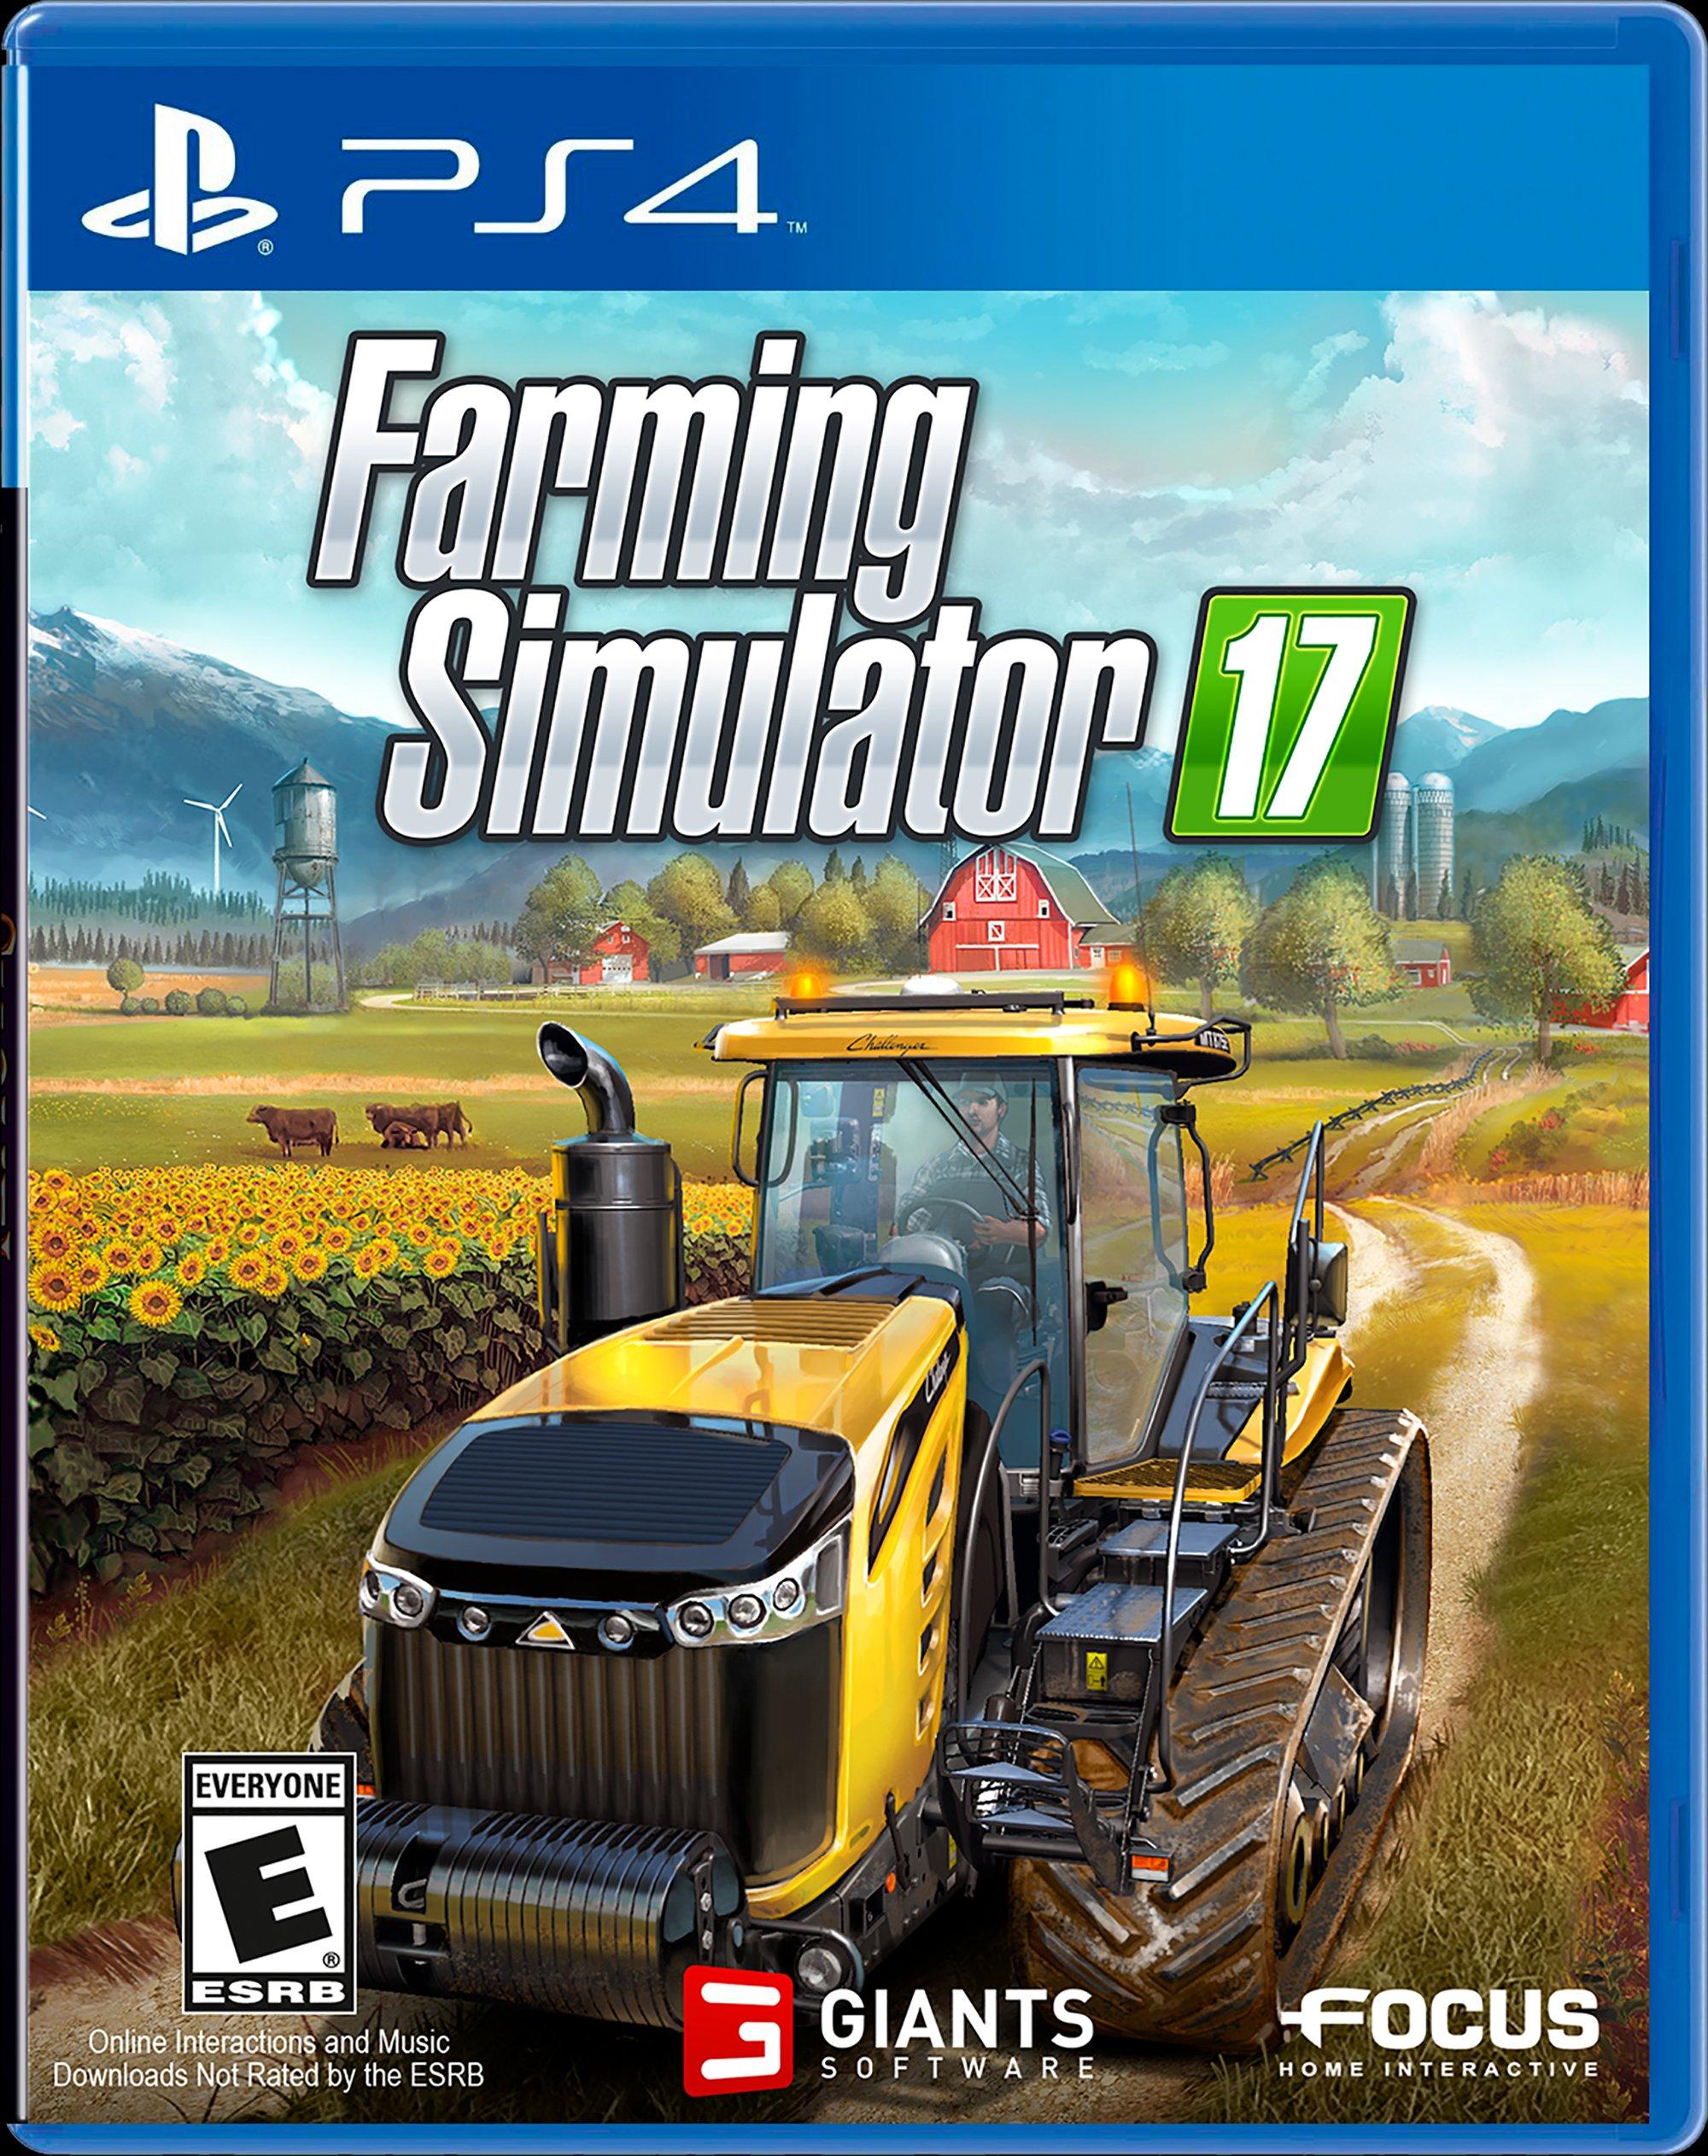 Farming Simulator 17 - PS4 - Game Games - Loja de Games Online